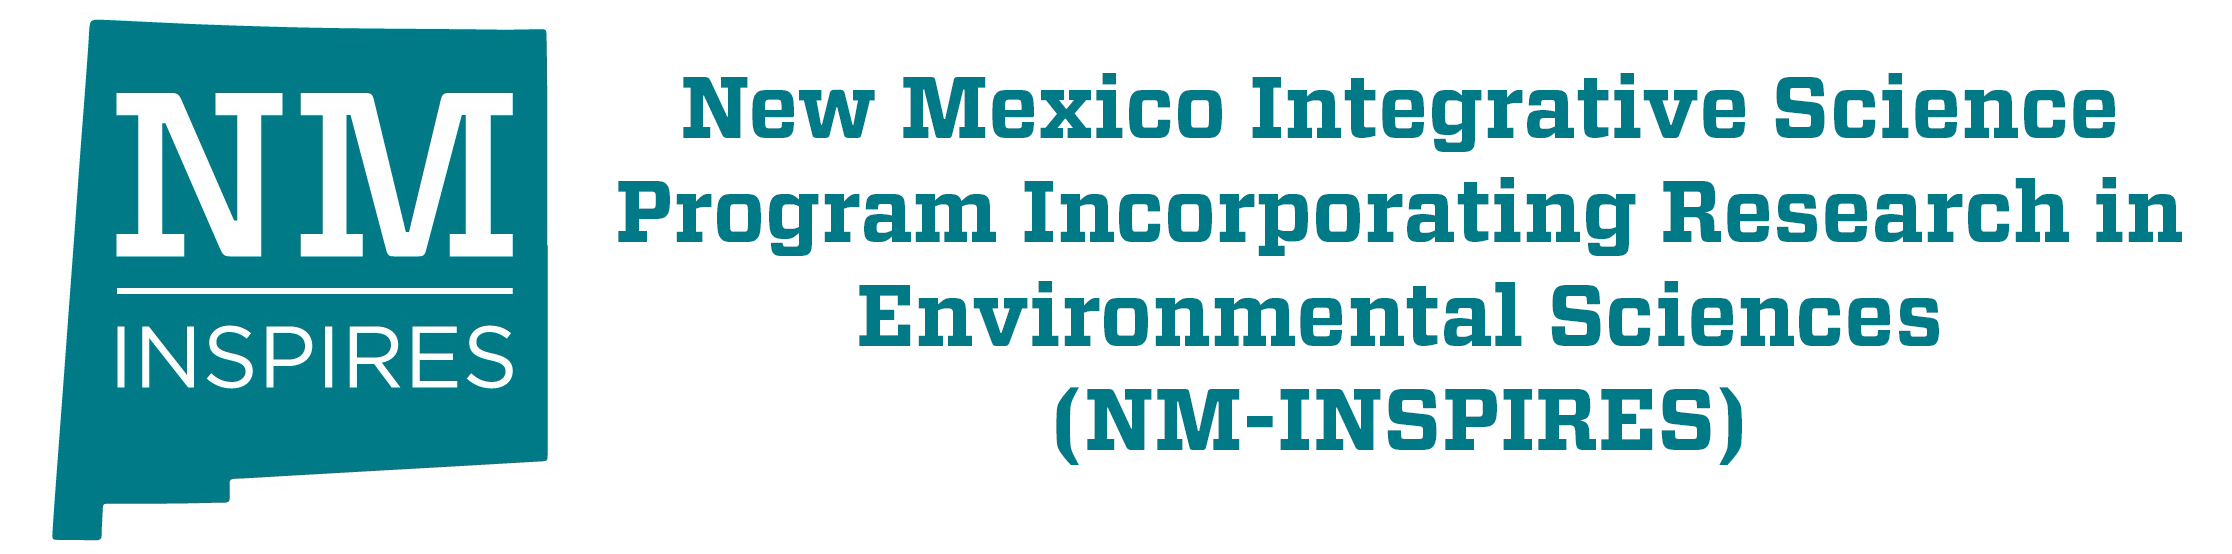 برنامج نيومكسيكو للعلوم التكاملي الذي يدمج البحث في العلوم البيئية (NM-INSPIRES)